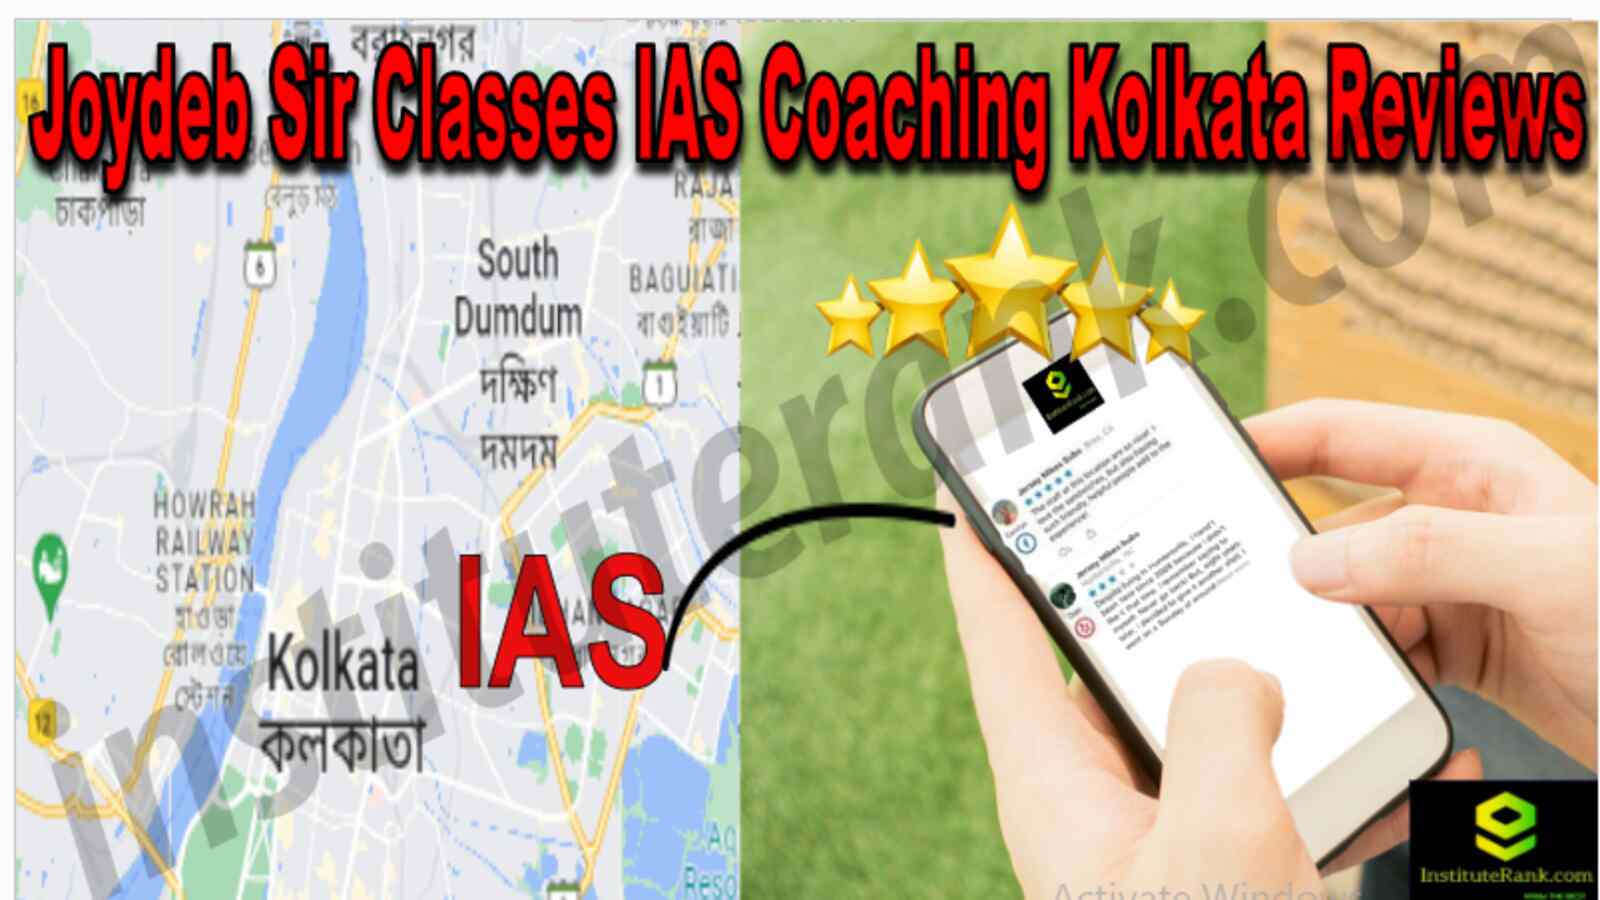 Joydeb Sir Classes IAS Coaching Kolkata reviews